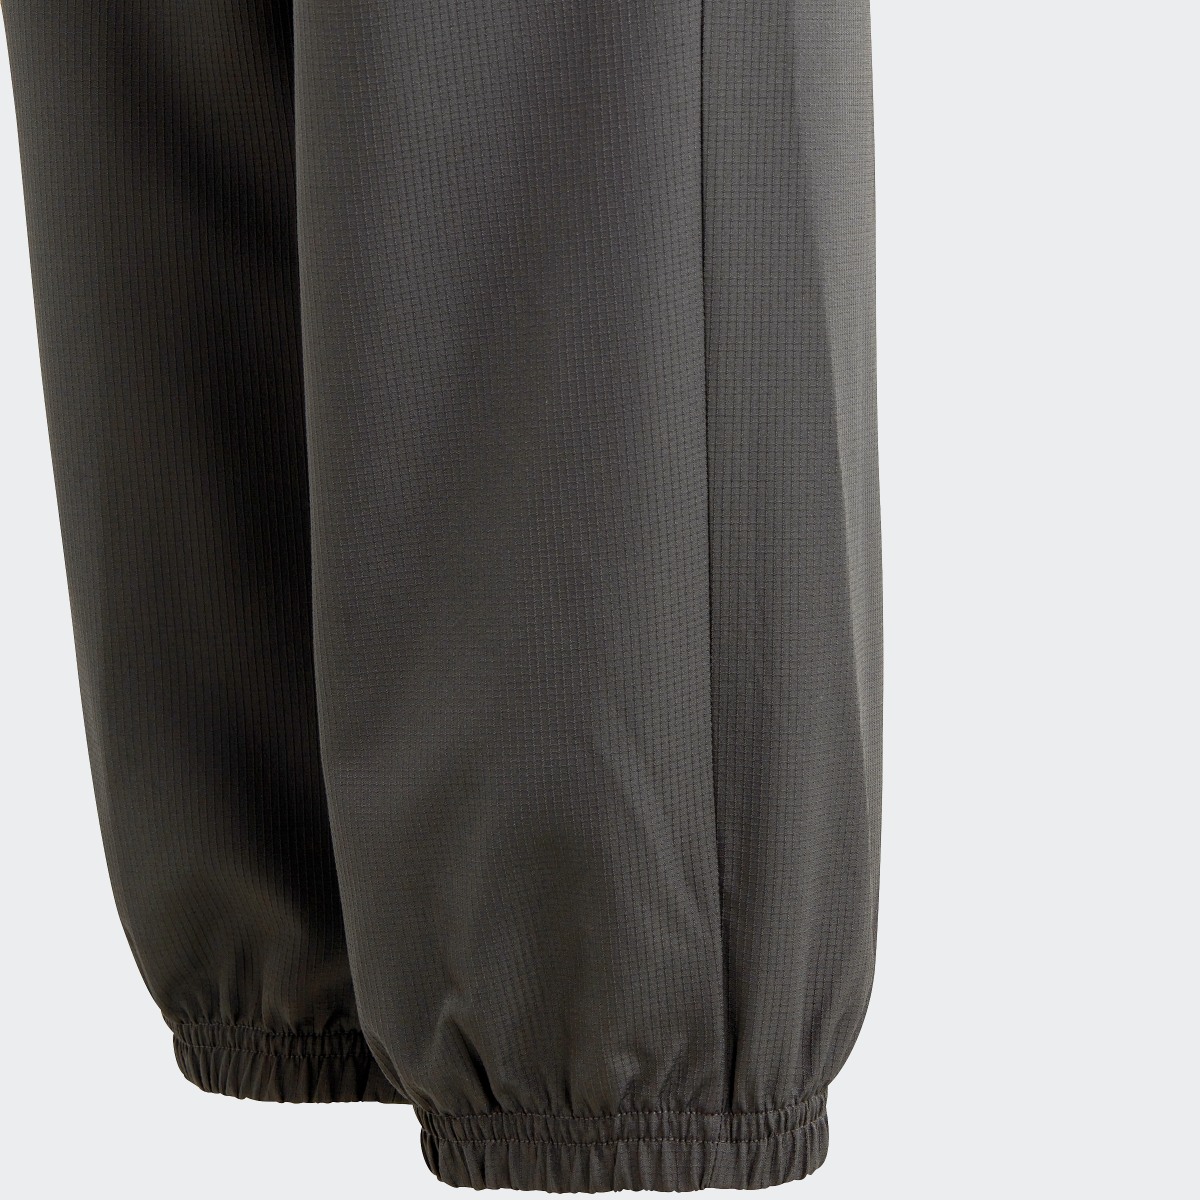 Adidas City Escape Casual Woven Cargo Pocket Pants. 6